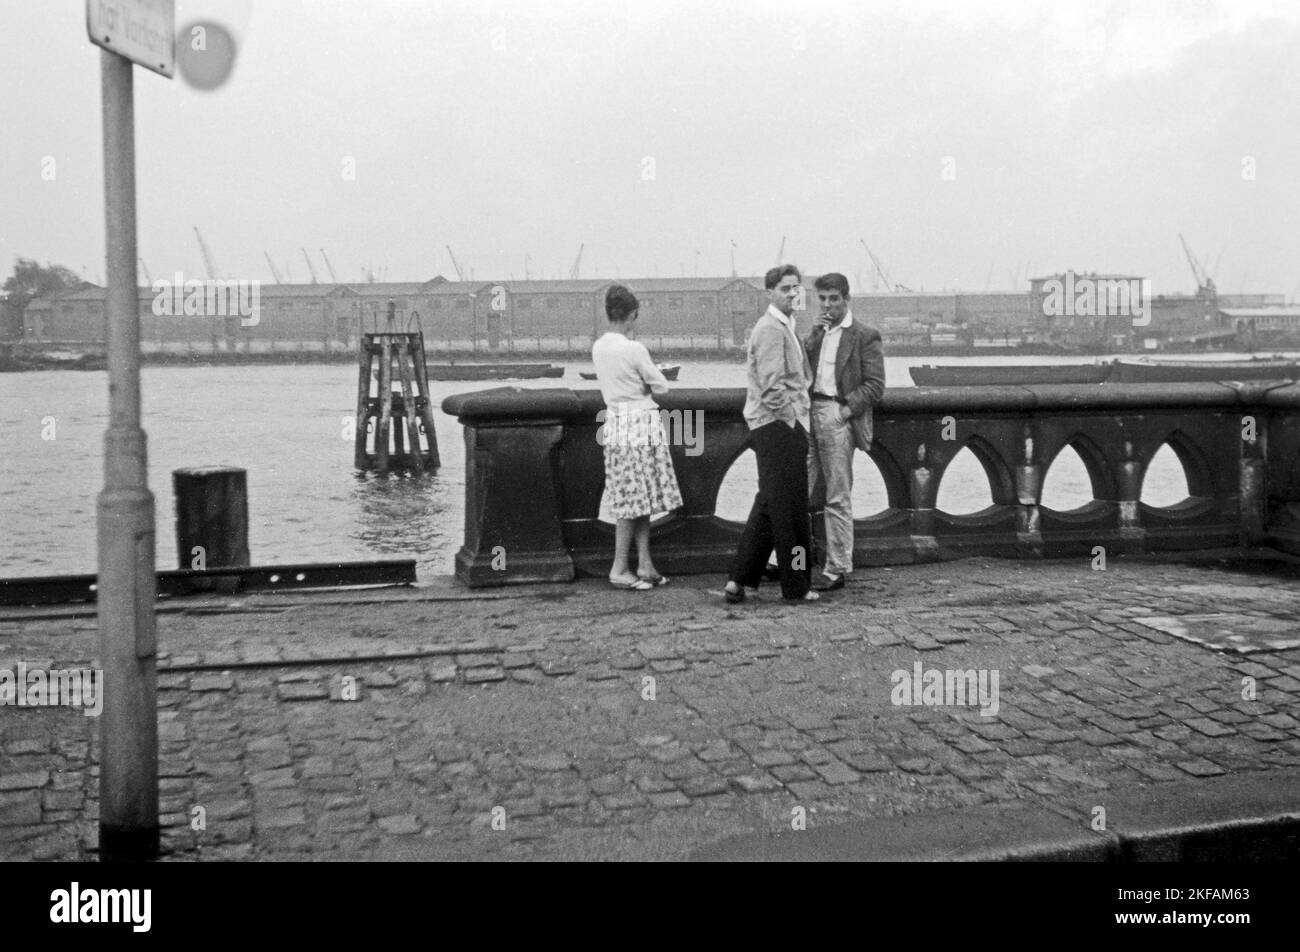 Junge Leute im Hamburger Hafen, 1959. Junge Menschen im Hamburger Hafen, 1959. Stockfoto